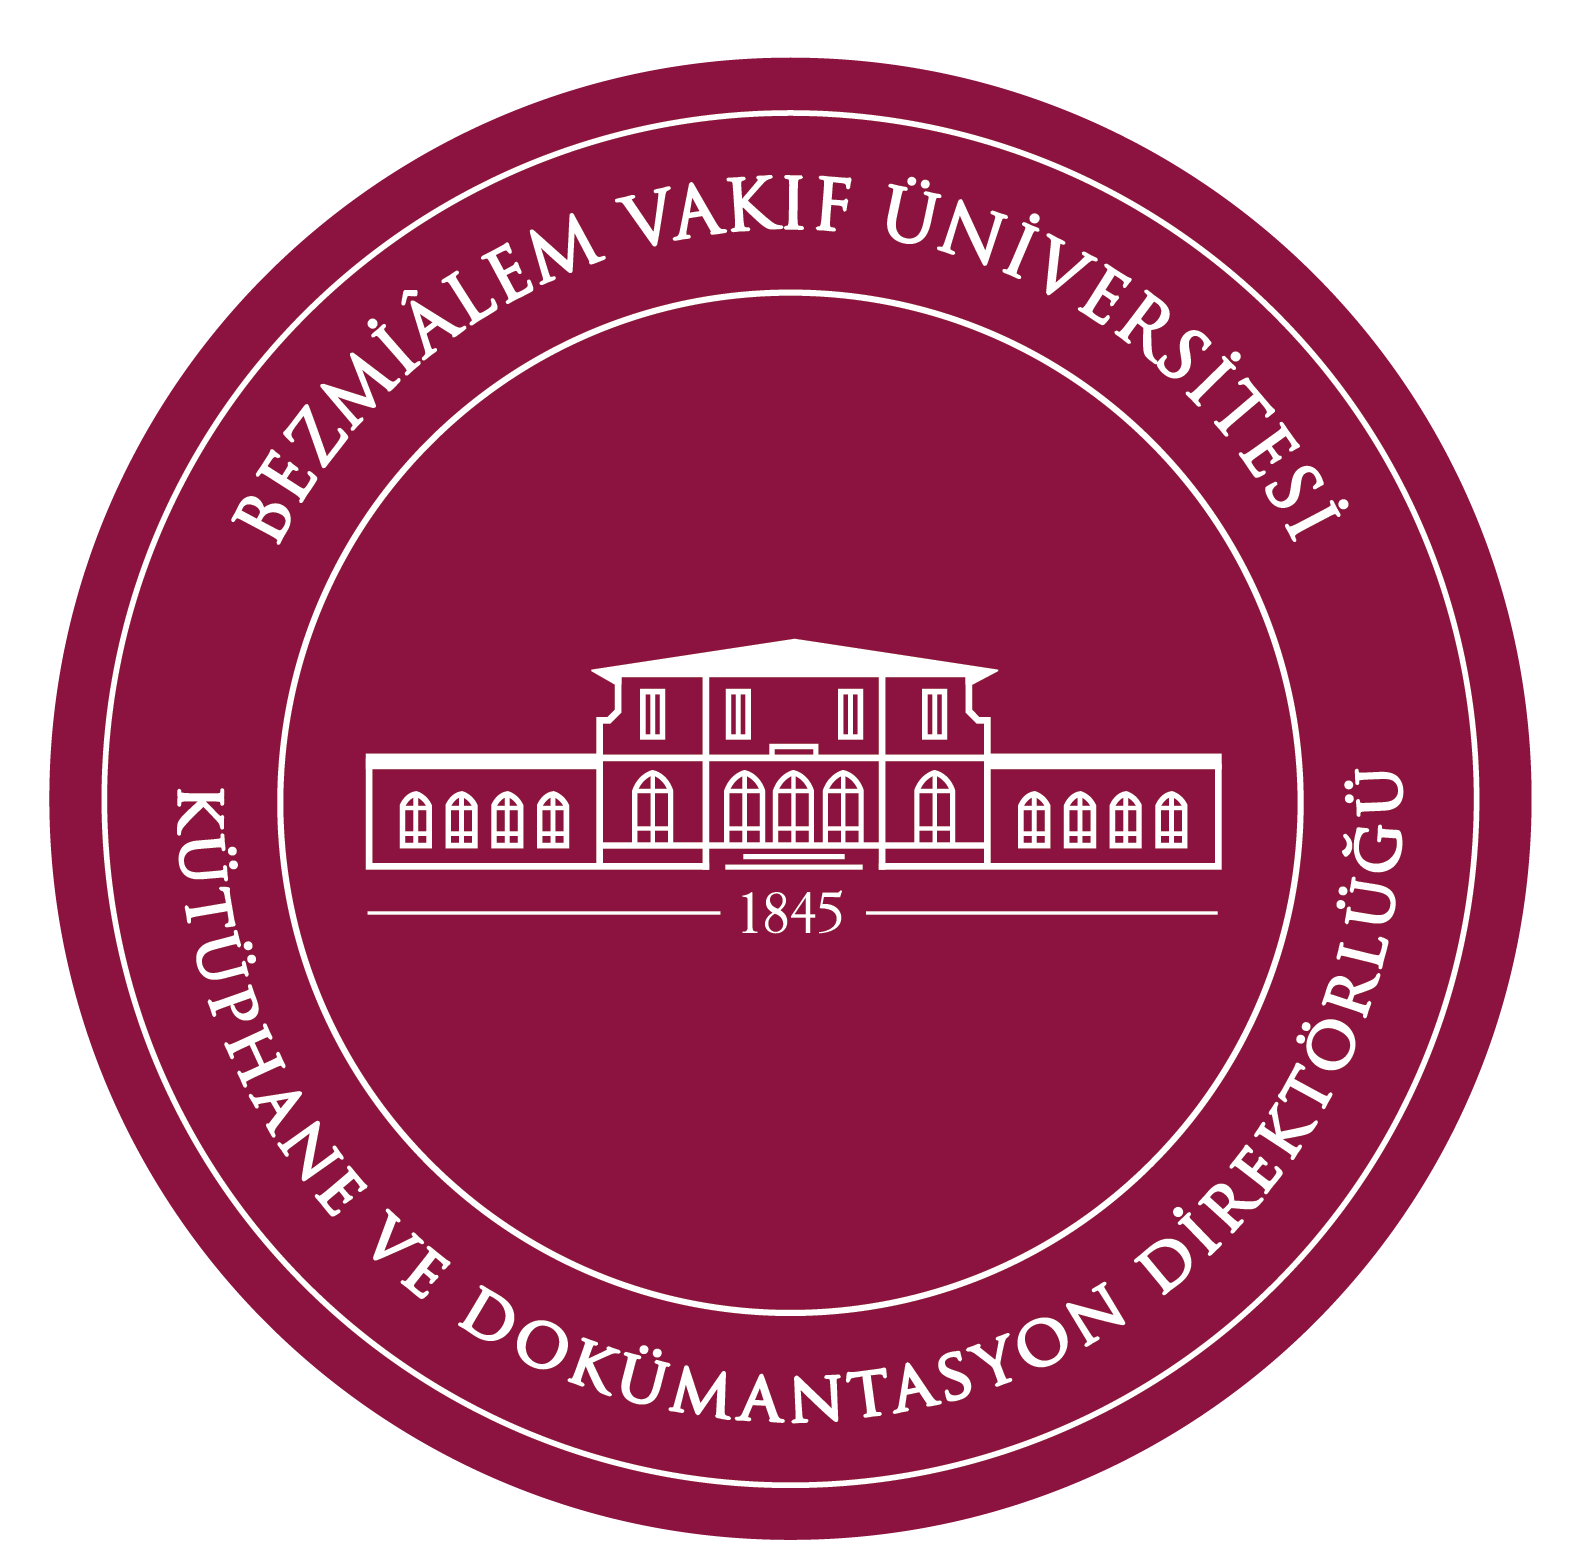 Bezmialem University Logo